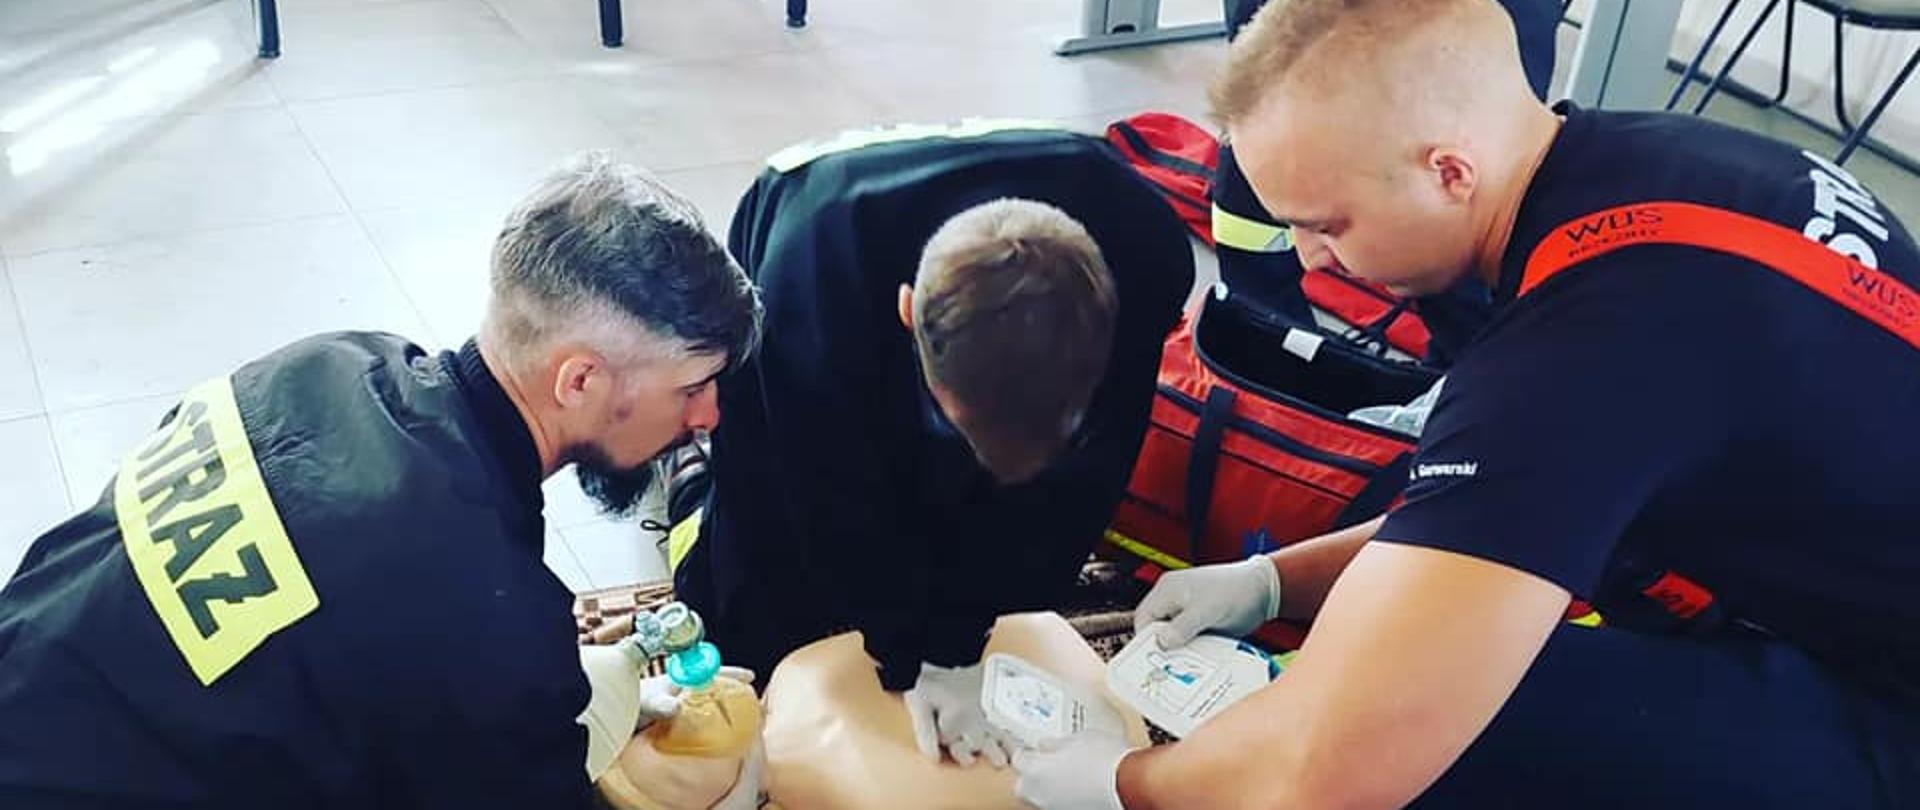 Trzech strażaków udziela pierwszej pomocy manekinowi dorosłej osoby, poprzez wykonanie resuscytacji krążeniowo oddechowej. Jeden ze strażaków trzyma w ręku elektrody od defibrylatora.